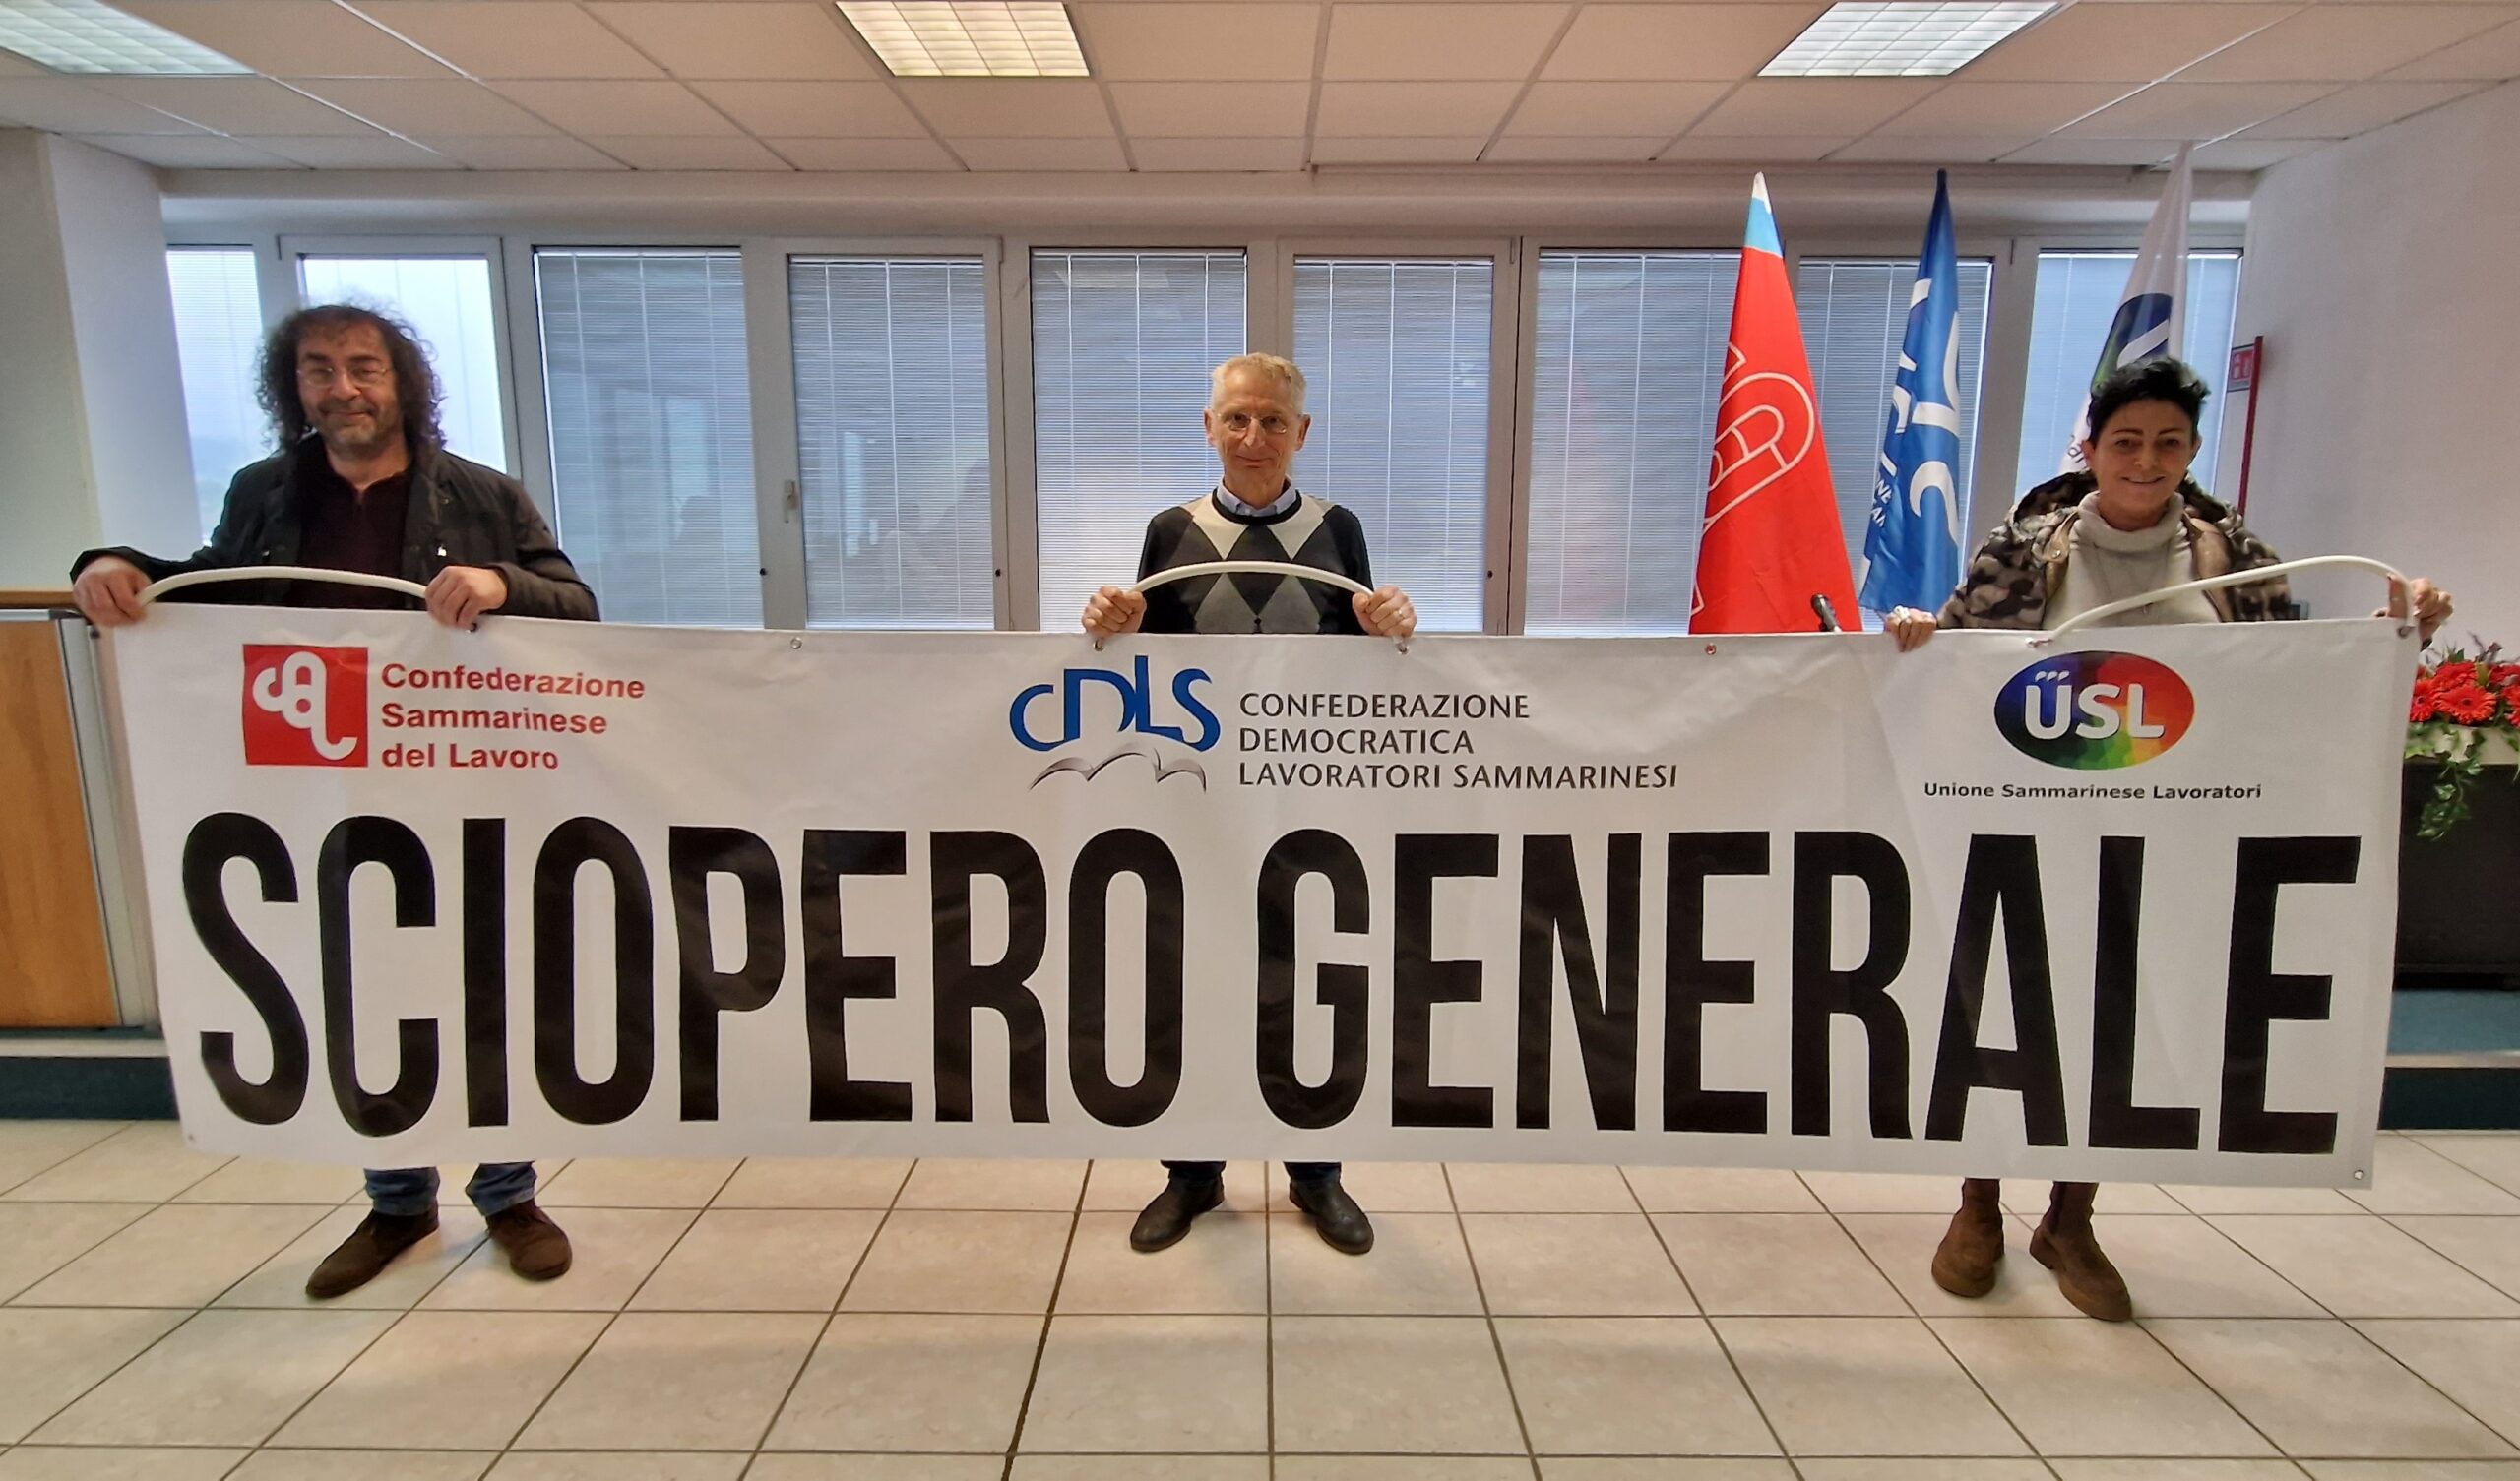 Venerdì 15 dicembre a San Marino sarà sciopero generale. I sindacati: “Insoddisfacenti le risposte del Governo sulla politica dei redditi”